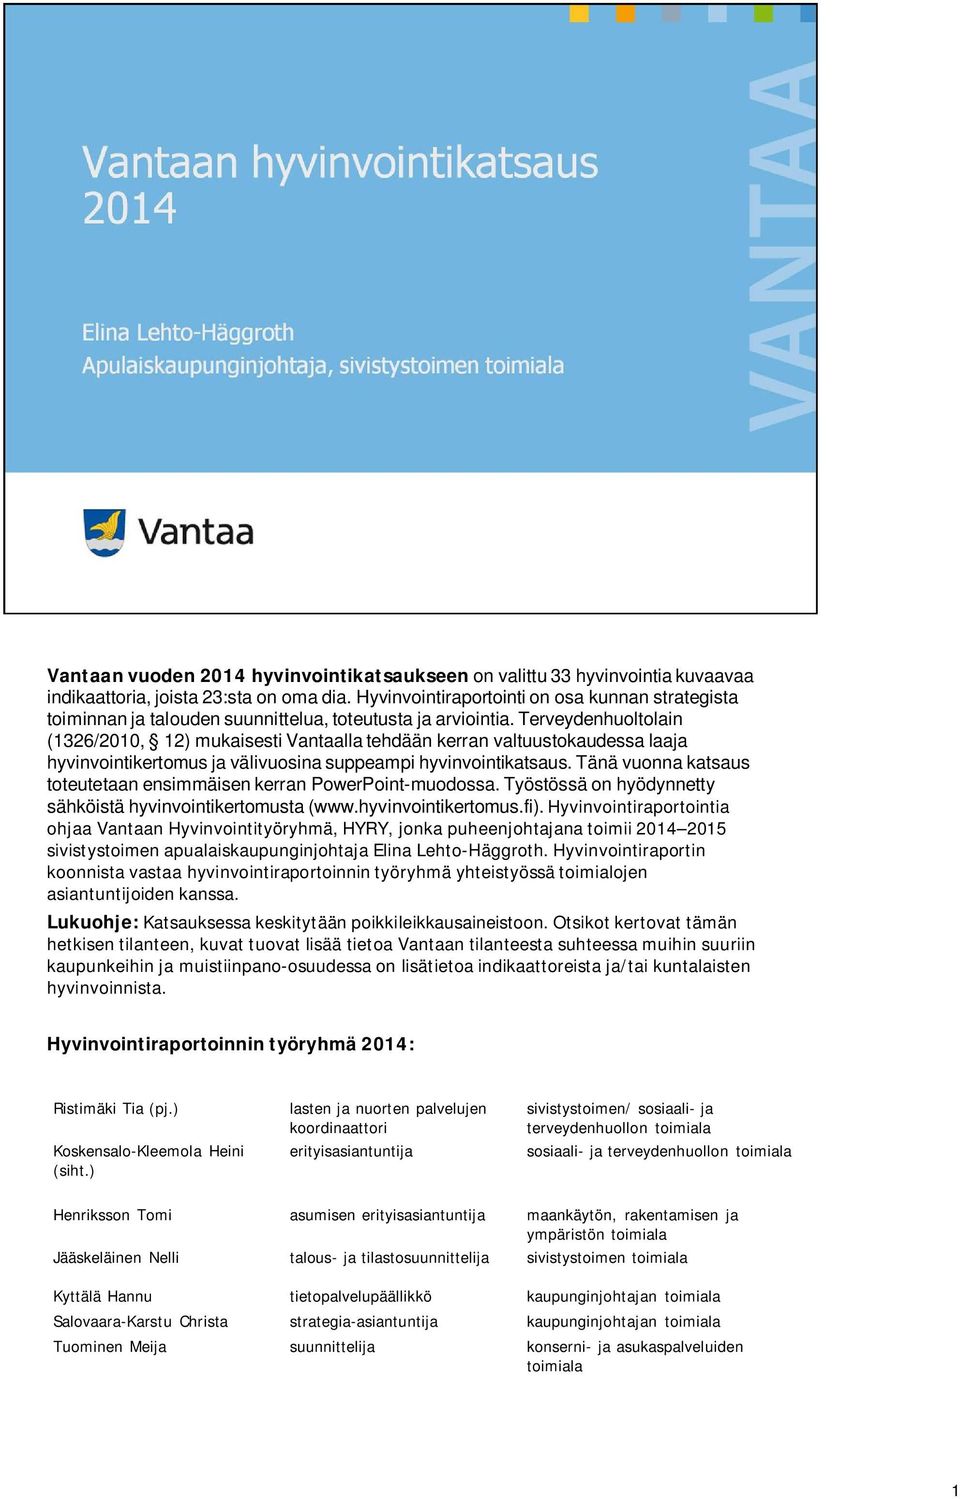 Terveydenhuoltolain (1326/2010, 12) mukaisesti Vantaalla tehdään kerran valtuustokaudessa laaja hyvinvointikertomus ja välivuosina suppeampi hyvinvointikatsaus.